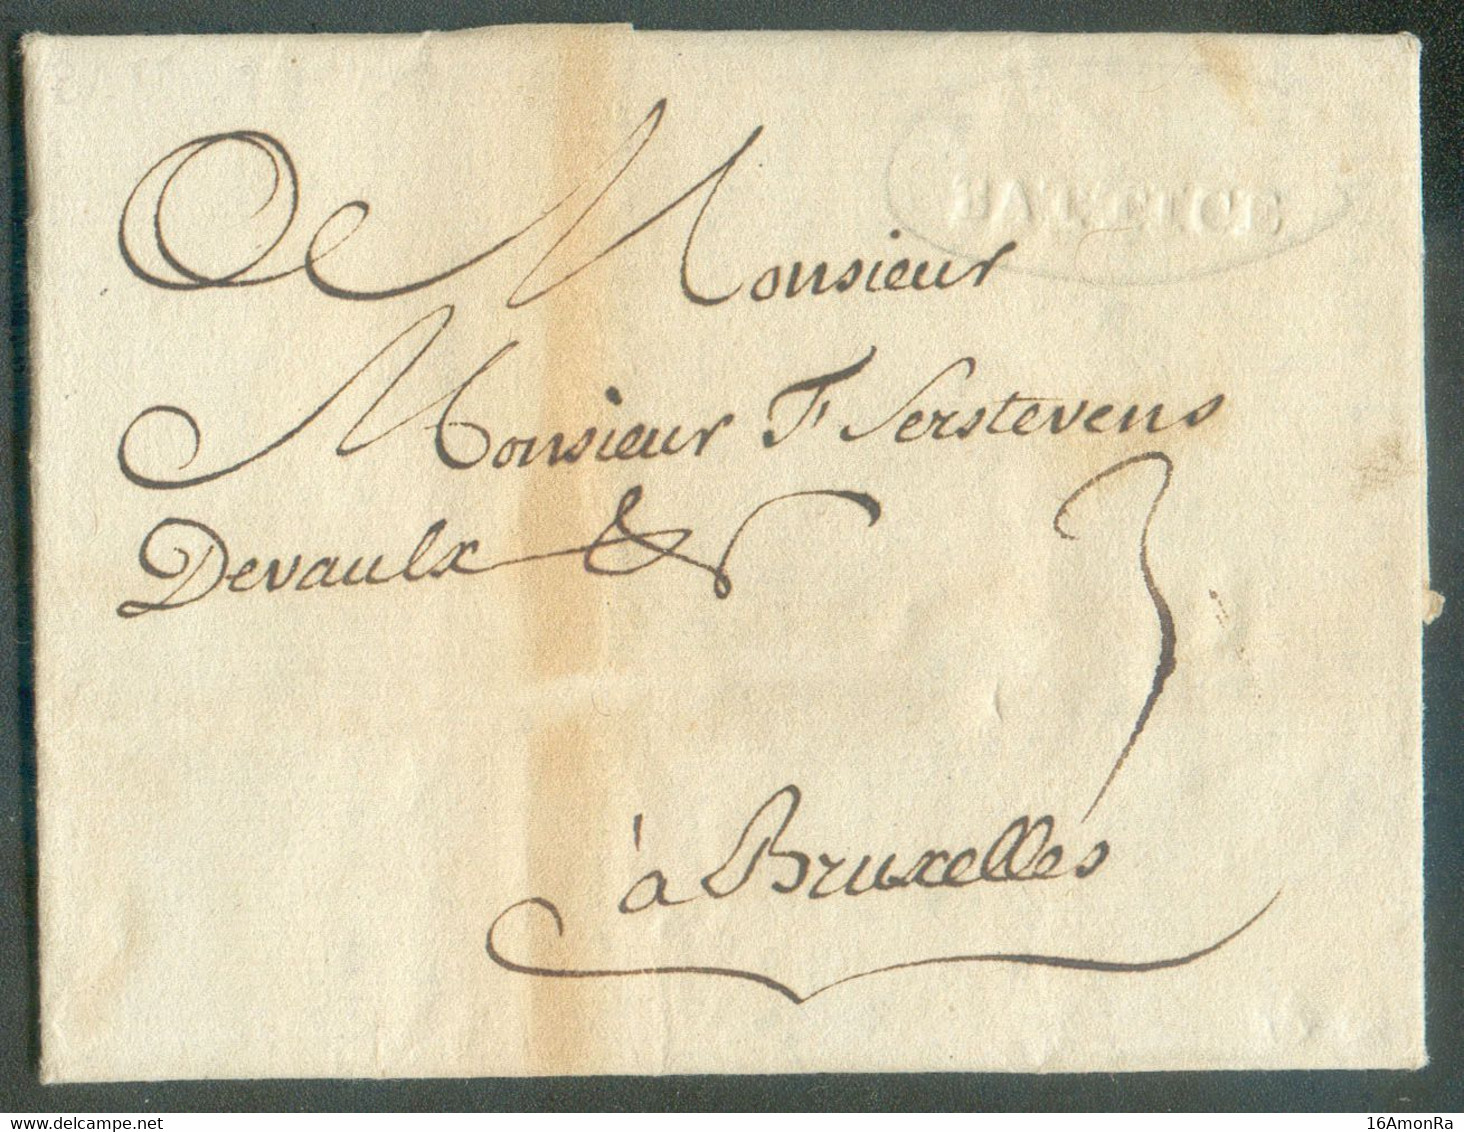 LAC De DOLHAIN Le 30 Mars 1778 Via (griffe En Creux)  BATTICE Vers Bruxelles - Très Bon Texte Sur Le Commerce Des Draps - 1714-1794 (Oostenrijkse Nederlanden)